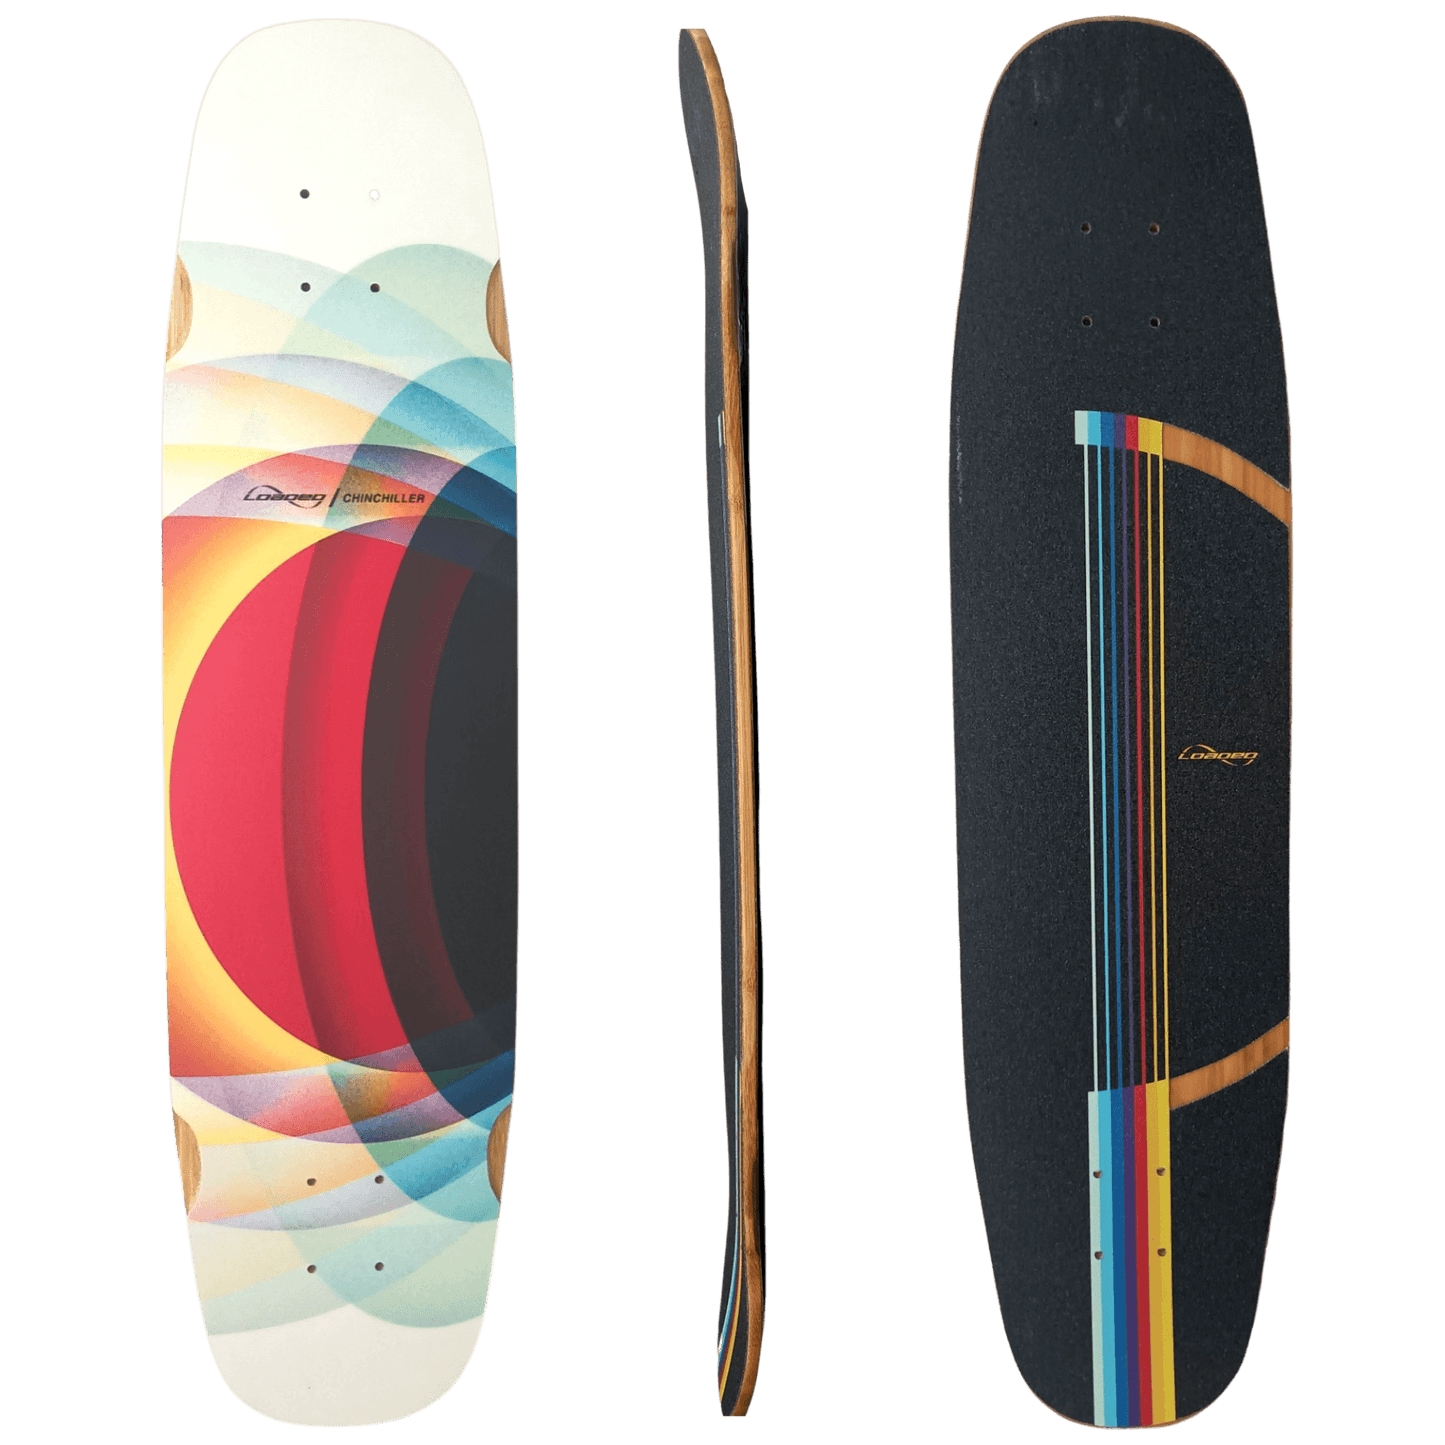 Loaded: ChinChiller Longboard Skateboard Deck - Motion Boardshop